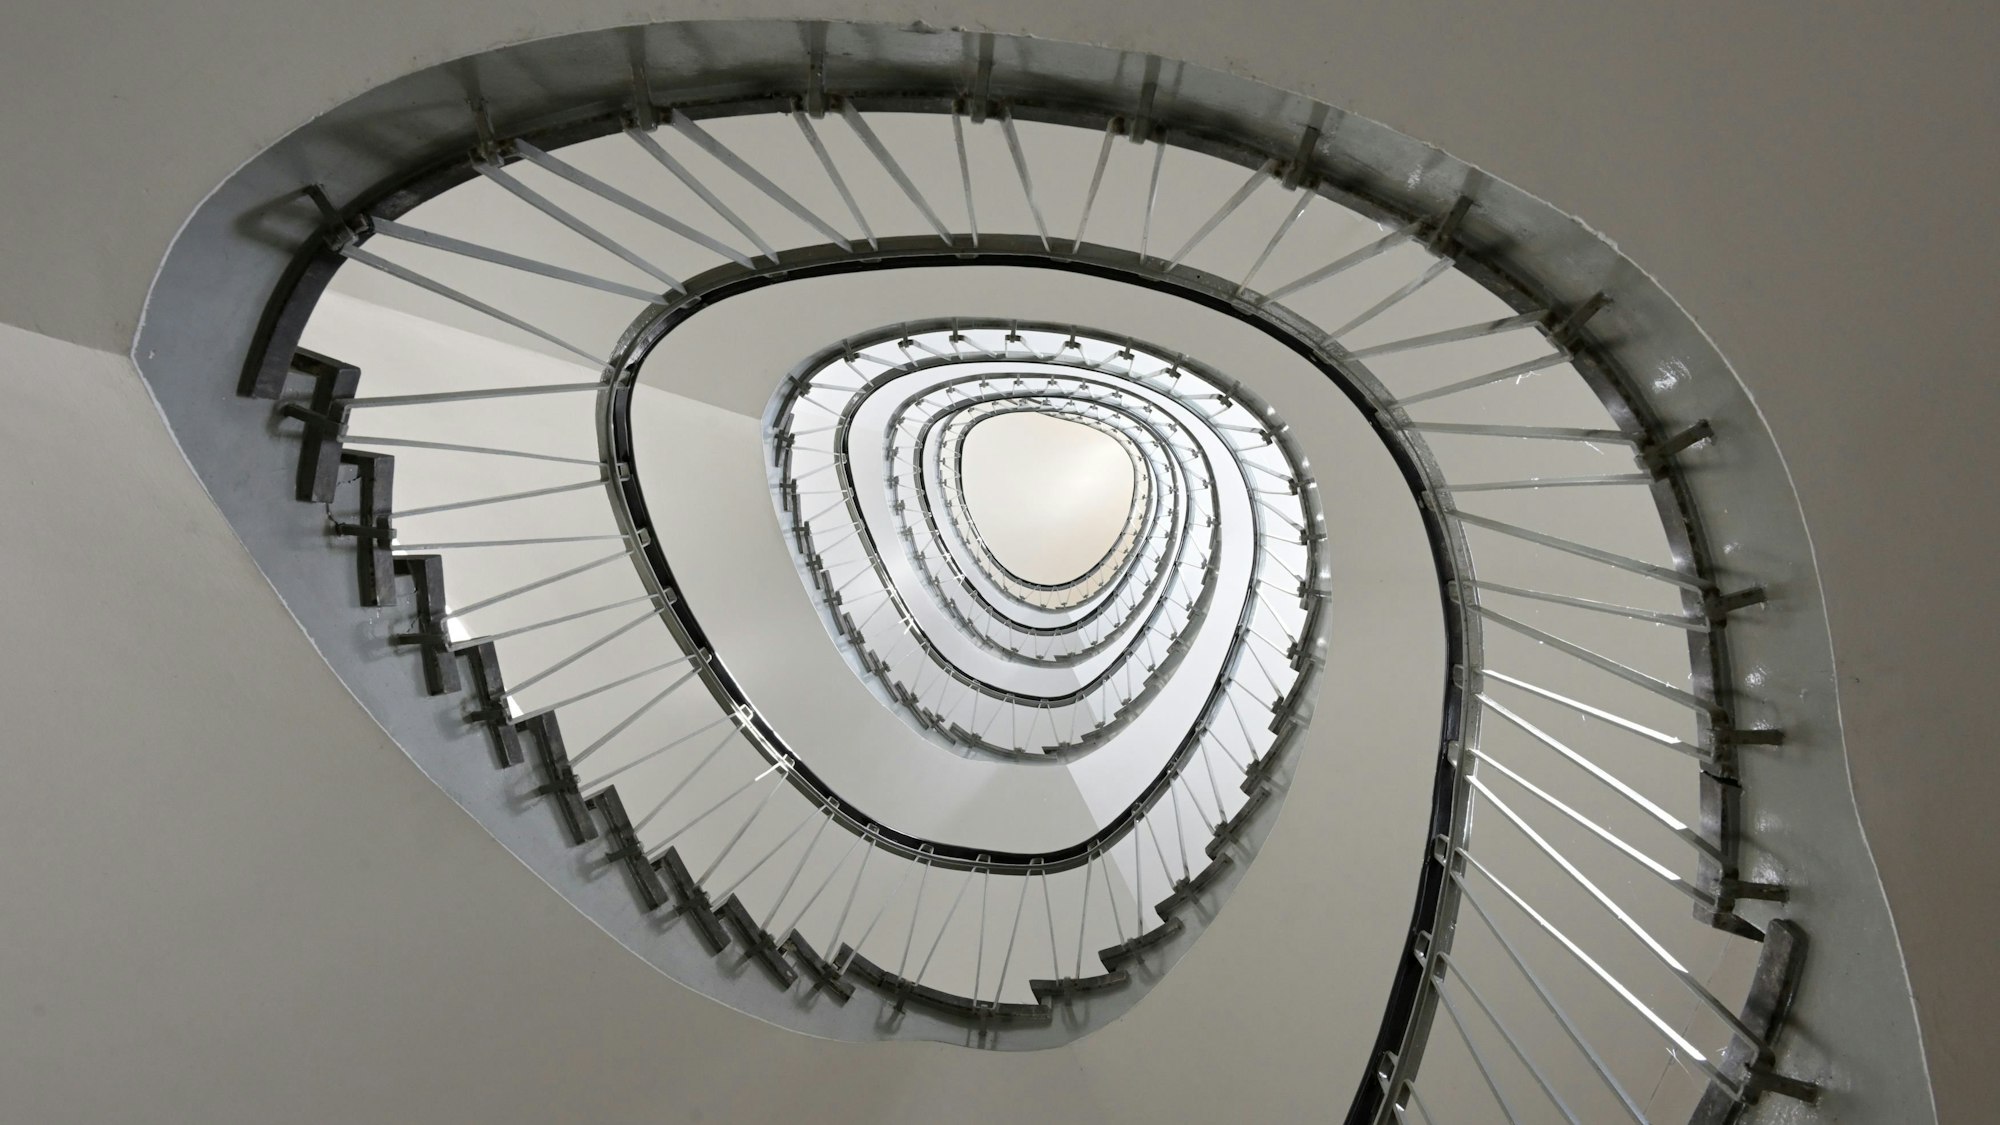 Das Treppenhaus in einem der beiden Stadthäuser in Bergisch Gladbach. Wie eine Spirale winden sich die Stufen nach oben.